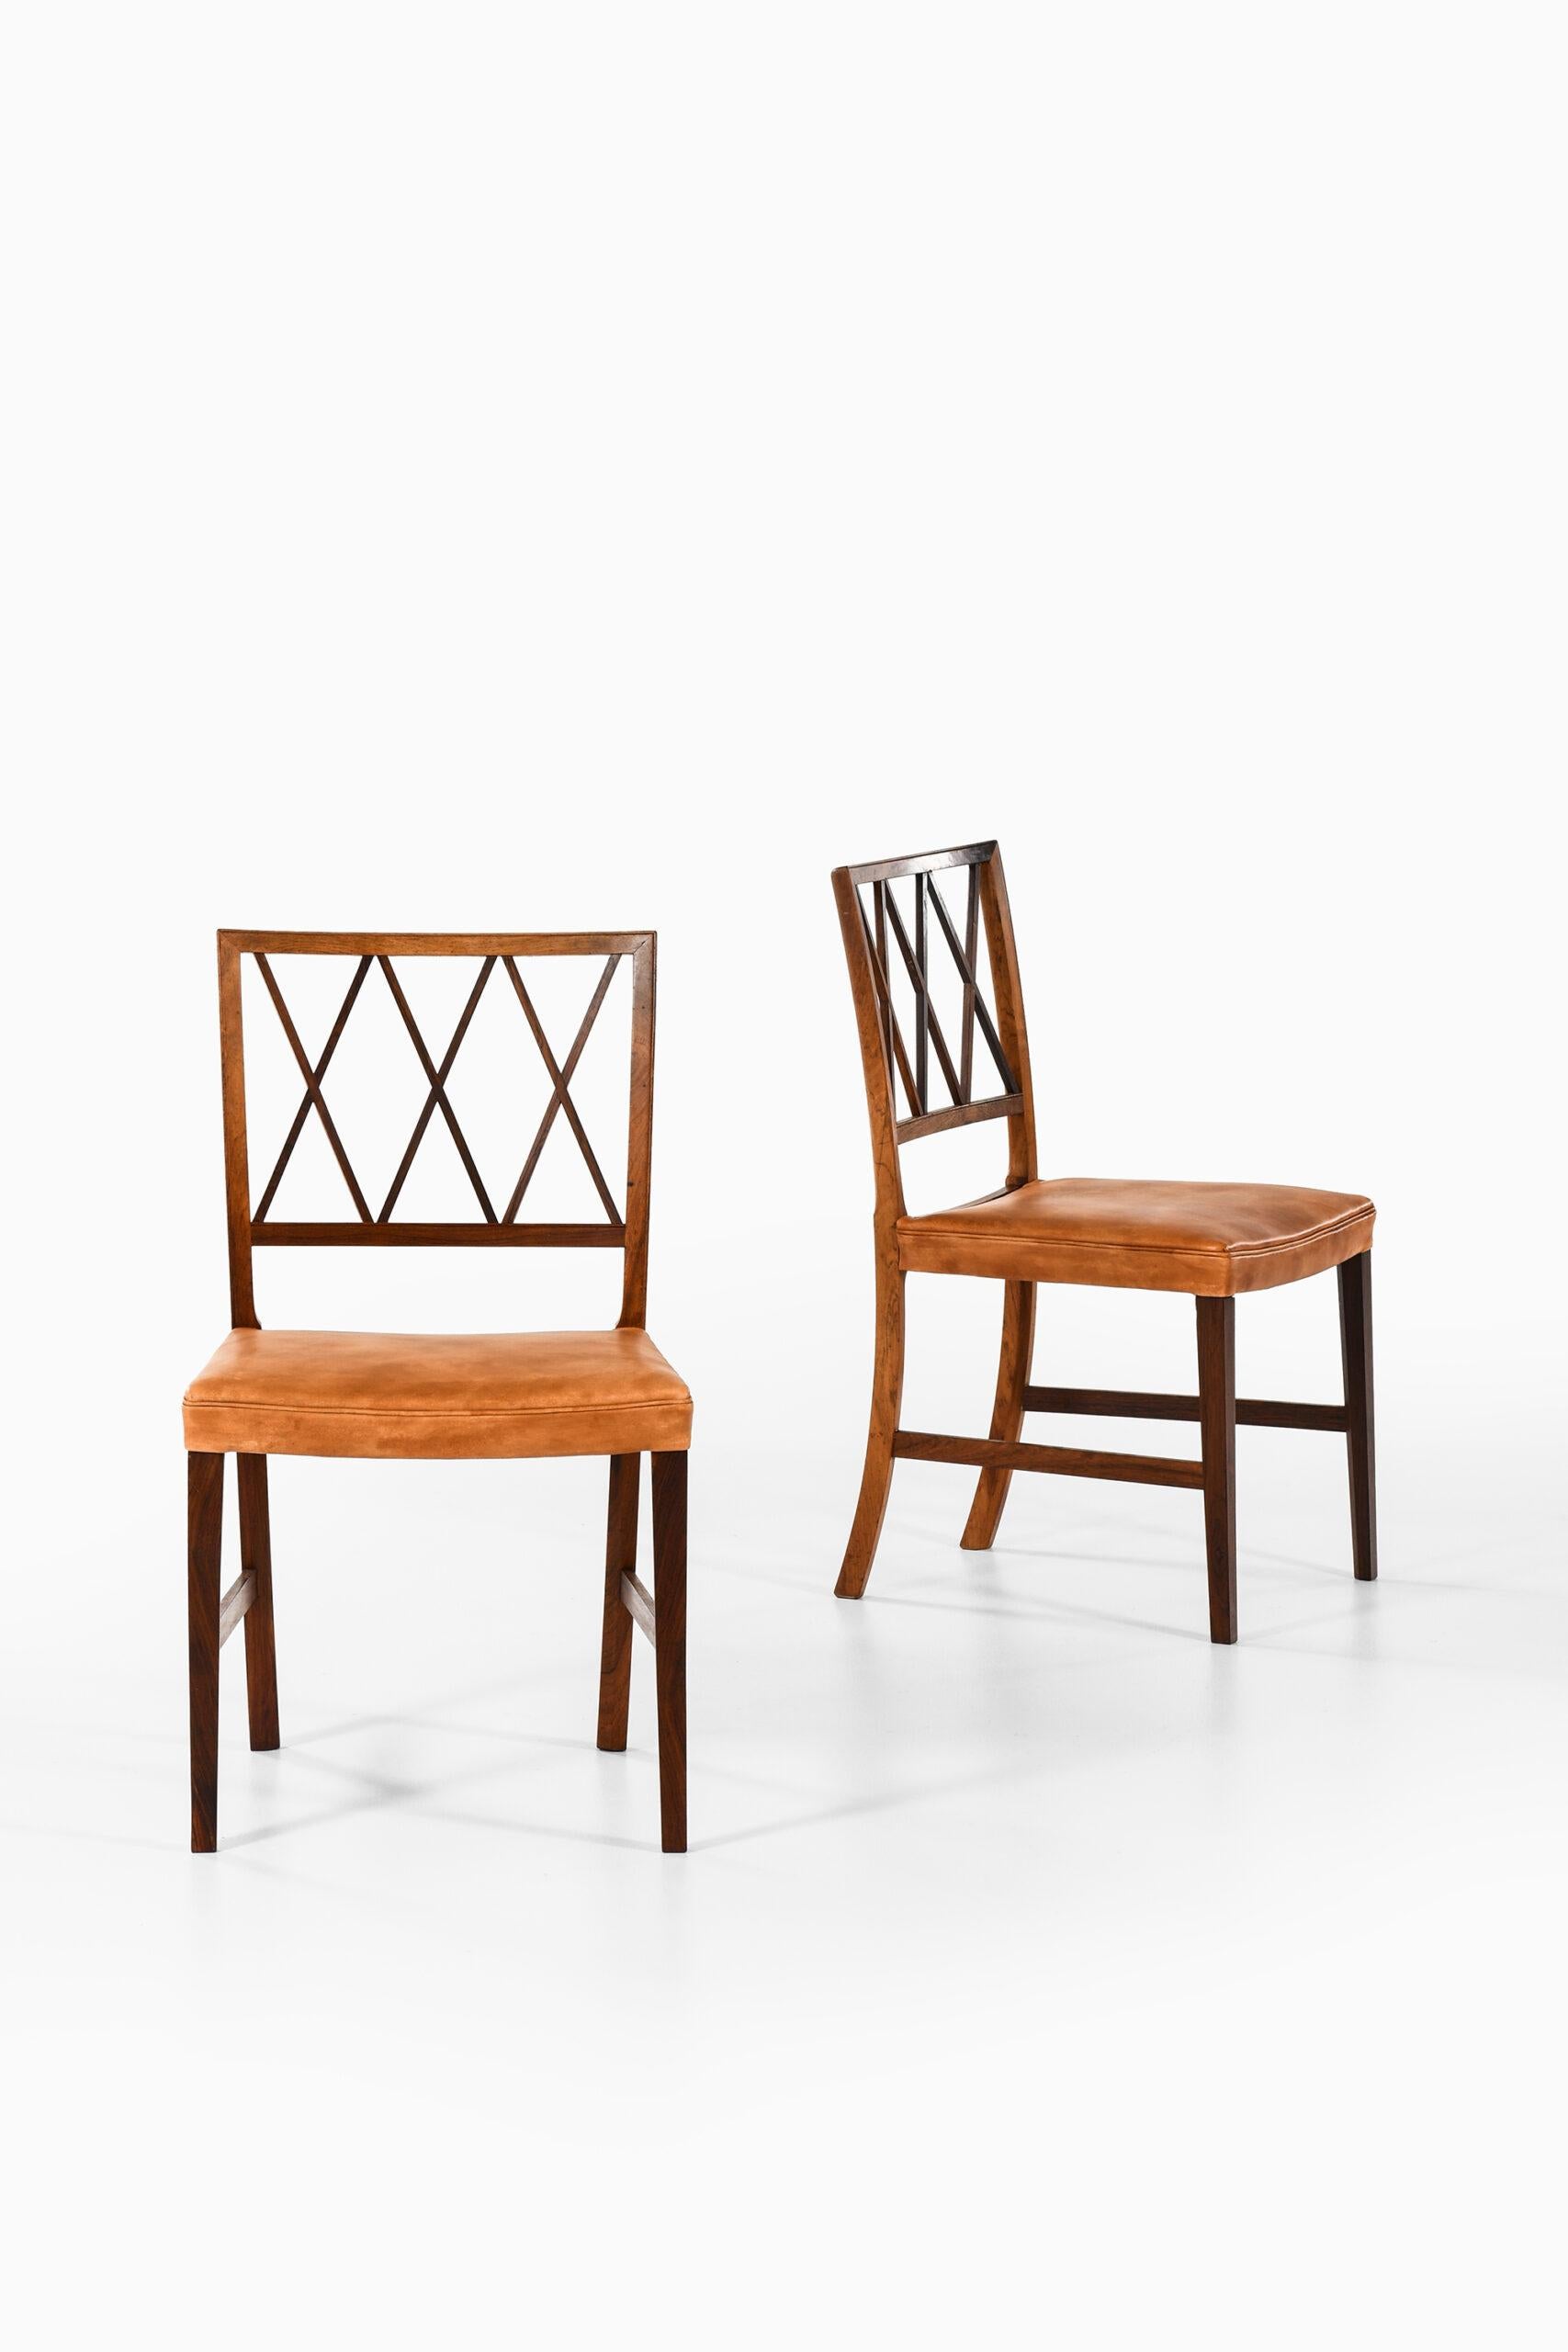 Scandinavian Modern Ole Wanscher Dining Chairs Produced by Cabinetmaker A.J. Iversen